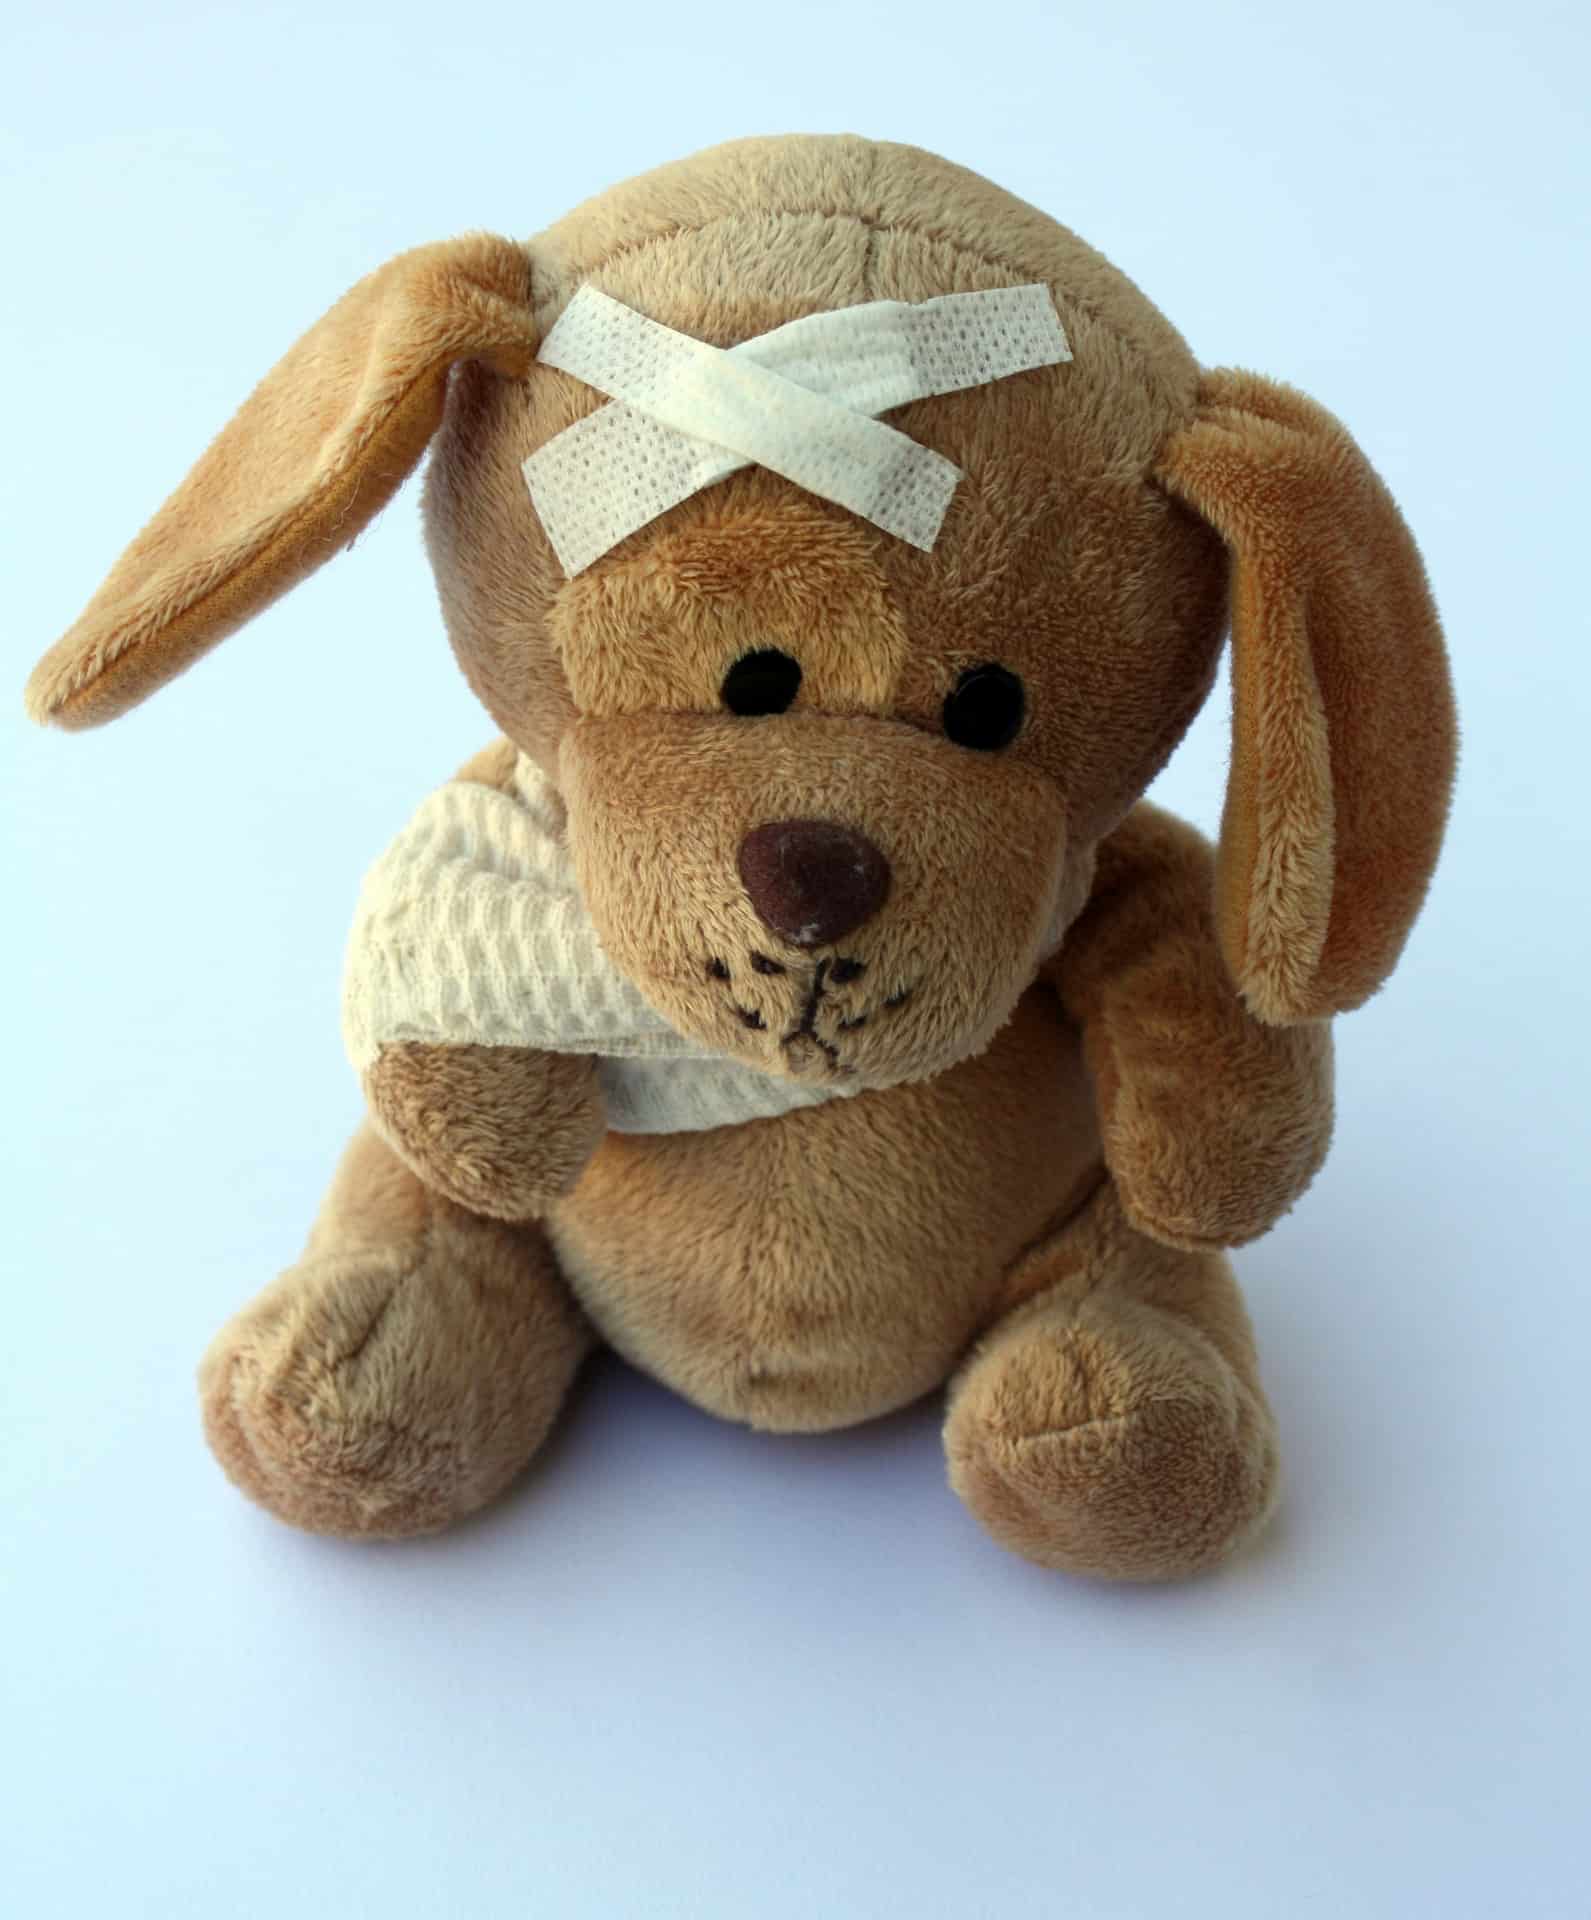 stuffed dog with bandages